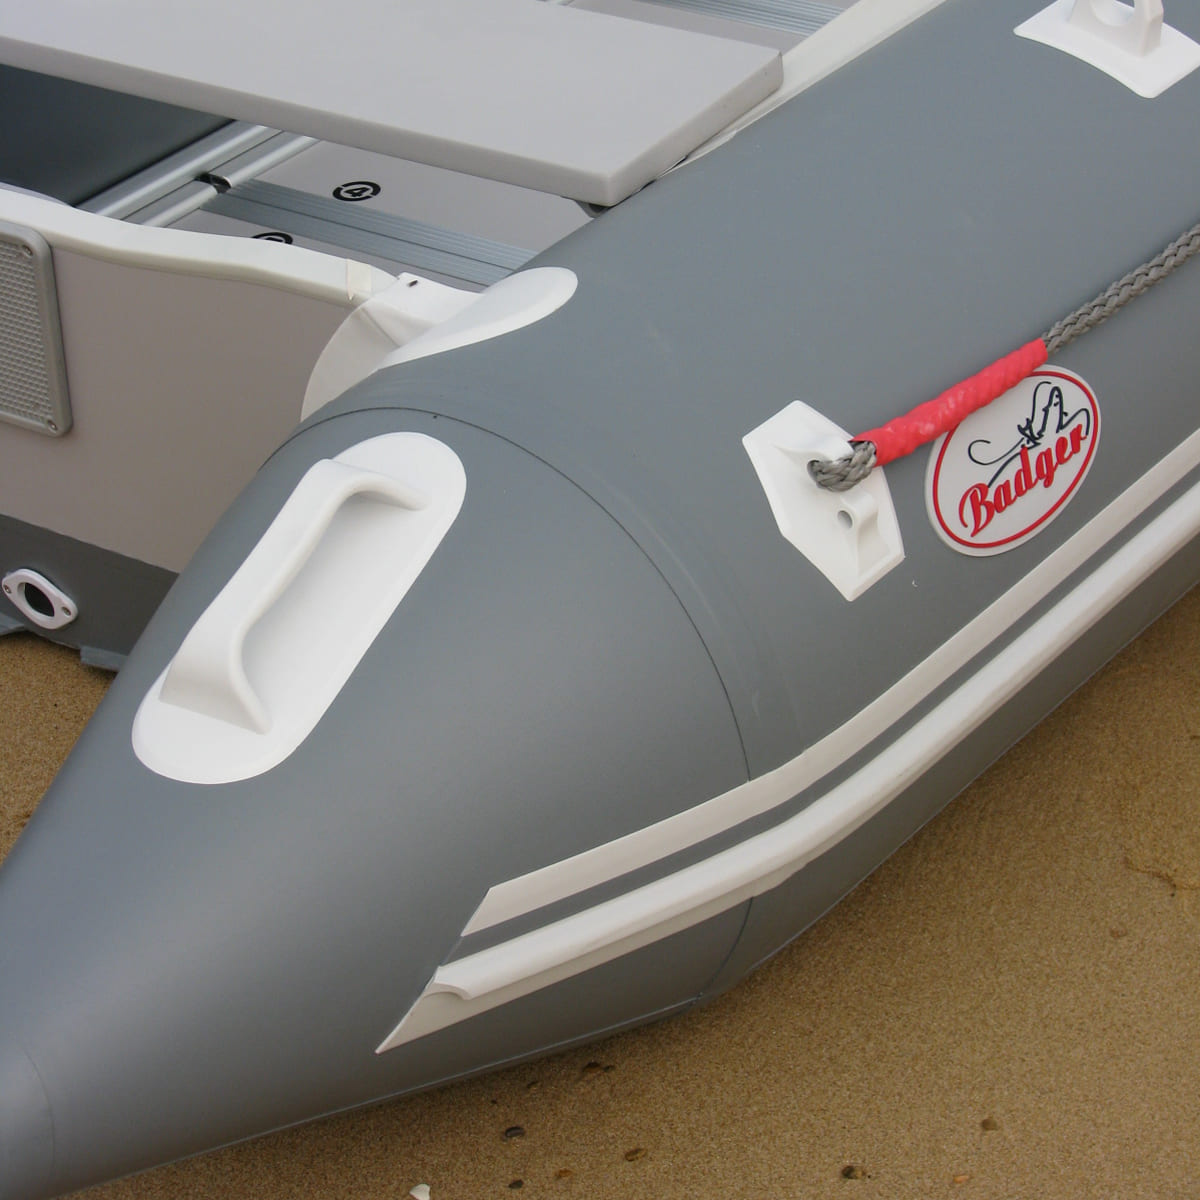 Лодки пвх "баджер" и их технические характеристики, чем отличаются лодки badger от других